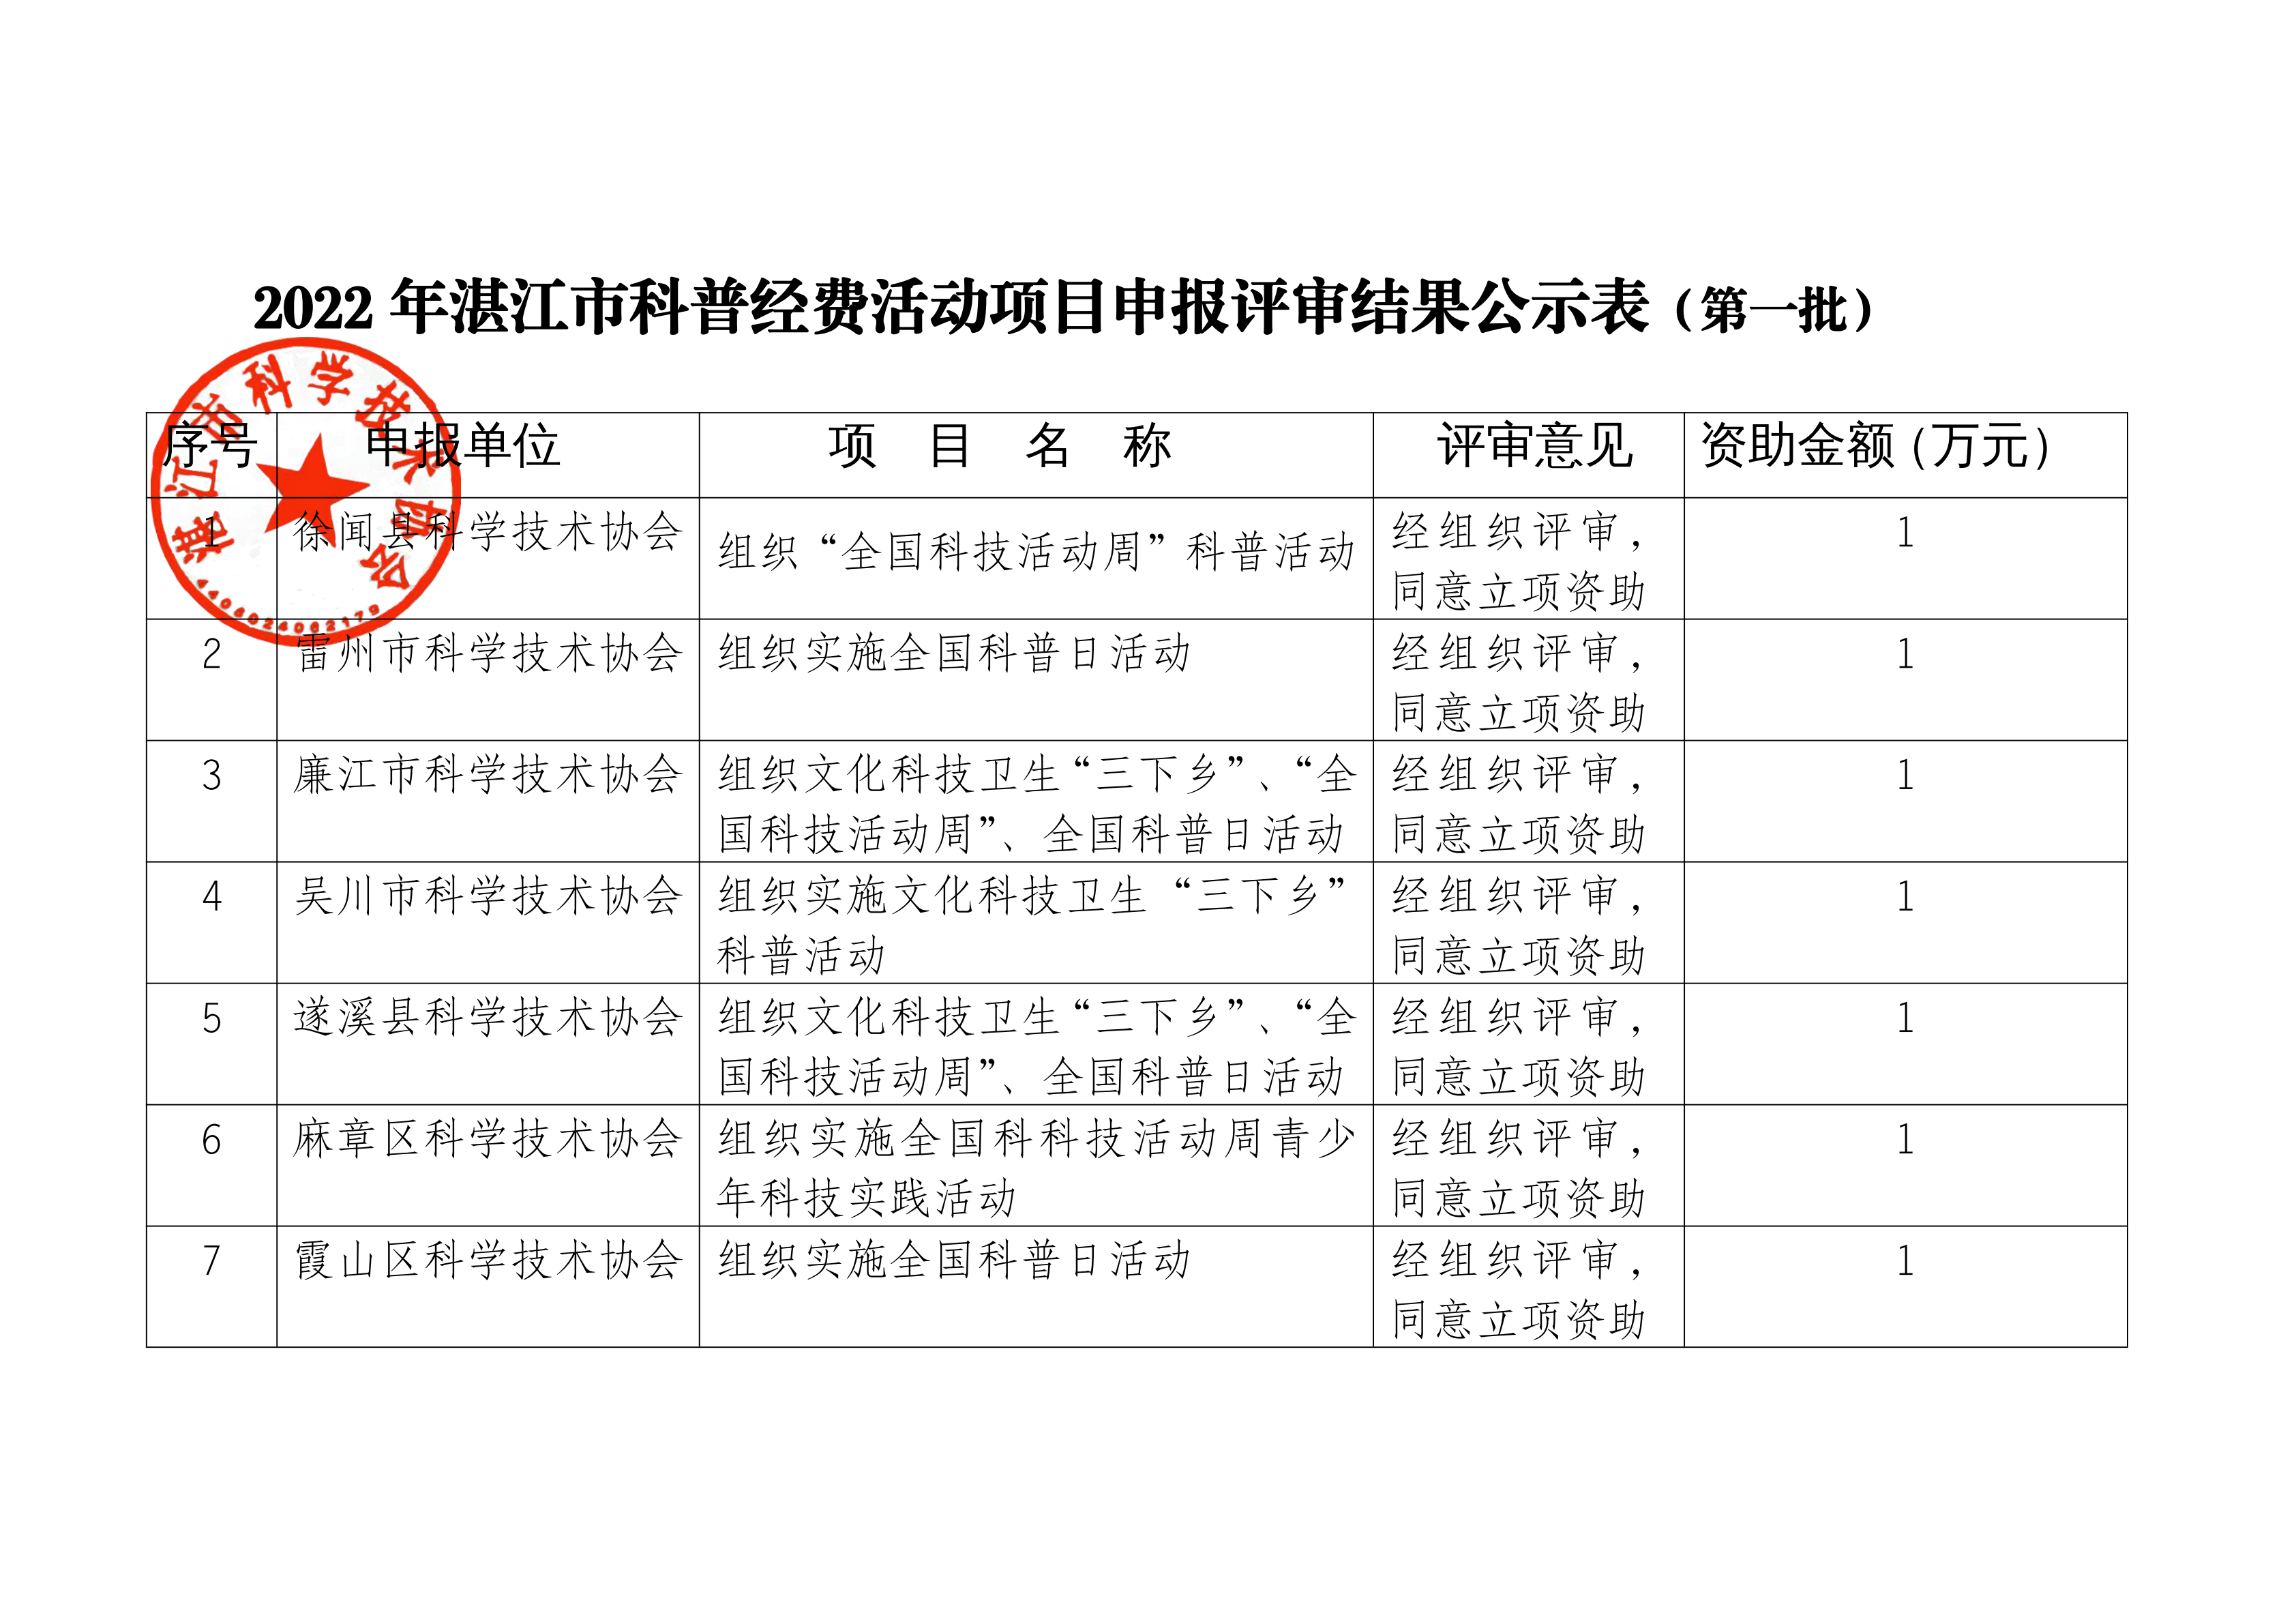 2022年湛江市科普经费活动项目申报评审结果公示表（第一）_00.png